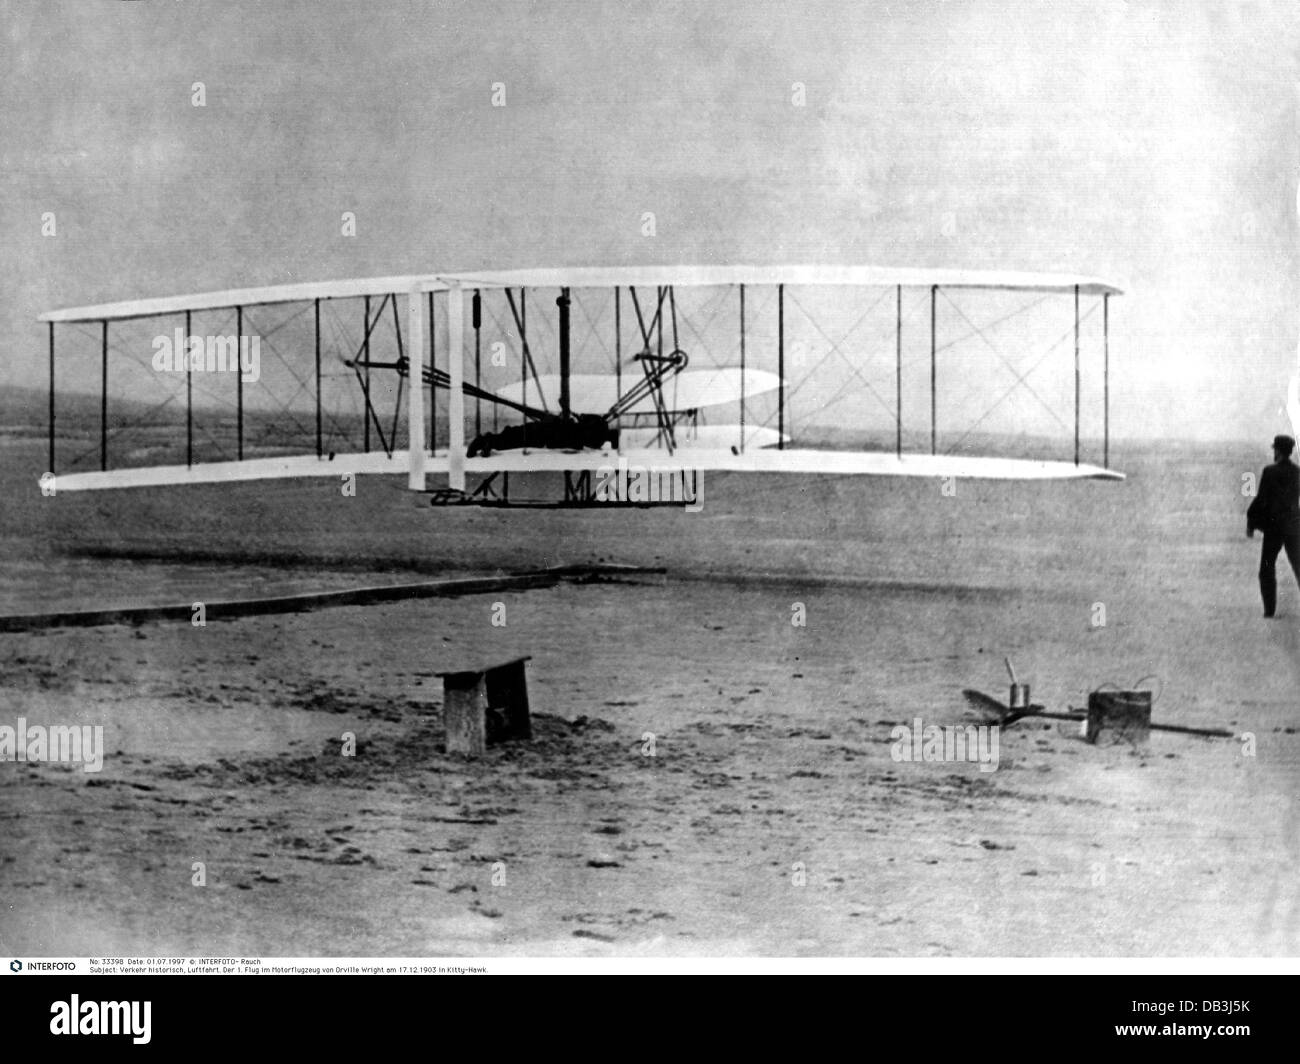 Transport / Transport, Luftfahrt, Flugzeuge, 1. Flug von Orville Wright  Flyer I, Kitty Hawk, 17.12.1903, Zusatzrechte-Clearences-nicht verfügbar  Stockfotografie - Alamy